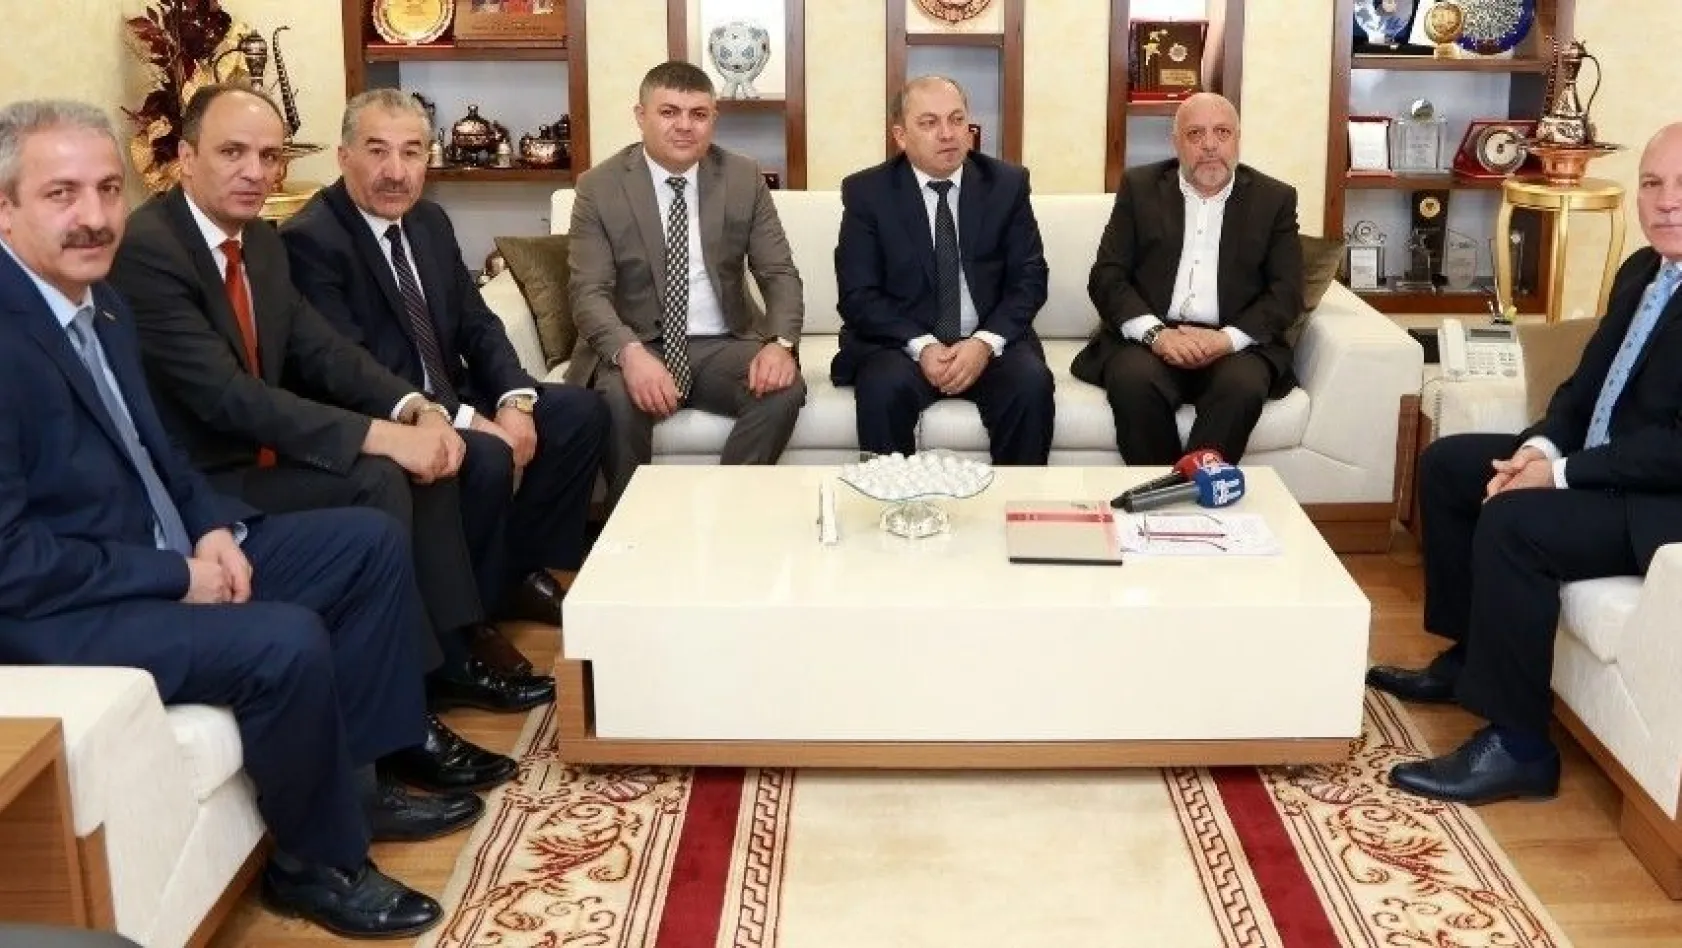 Hak-İş Konfederasyonu Genel Başkanı Arslan'dan Başkan Sekmen'e ziyaret
